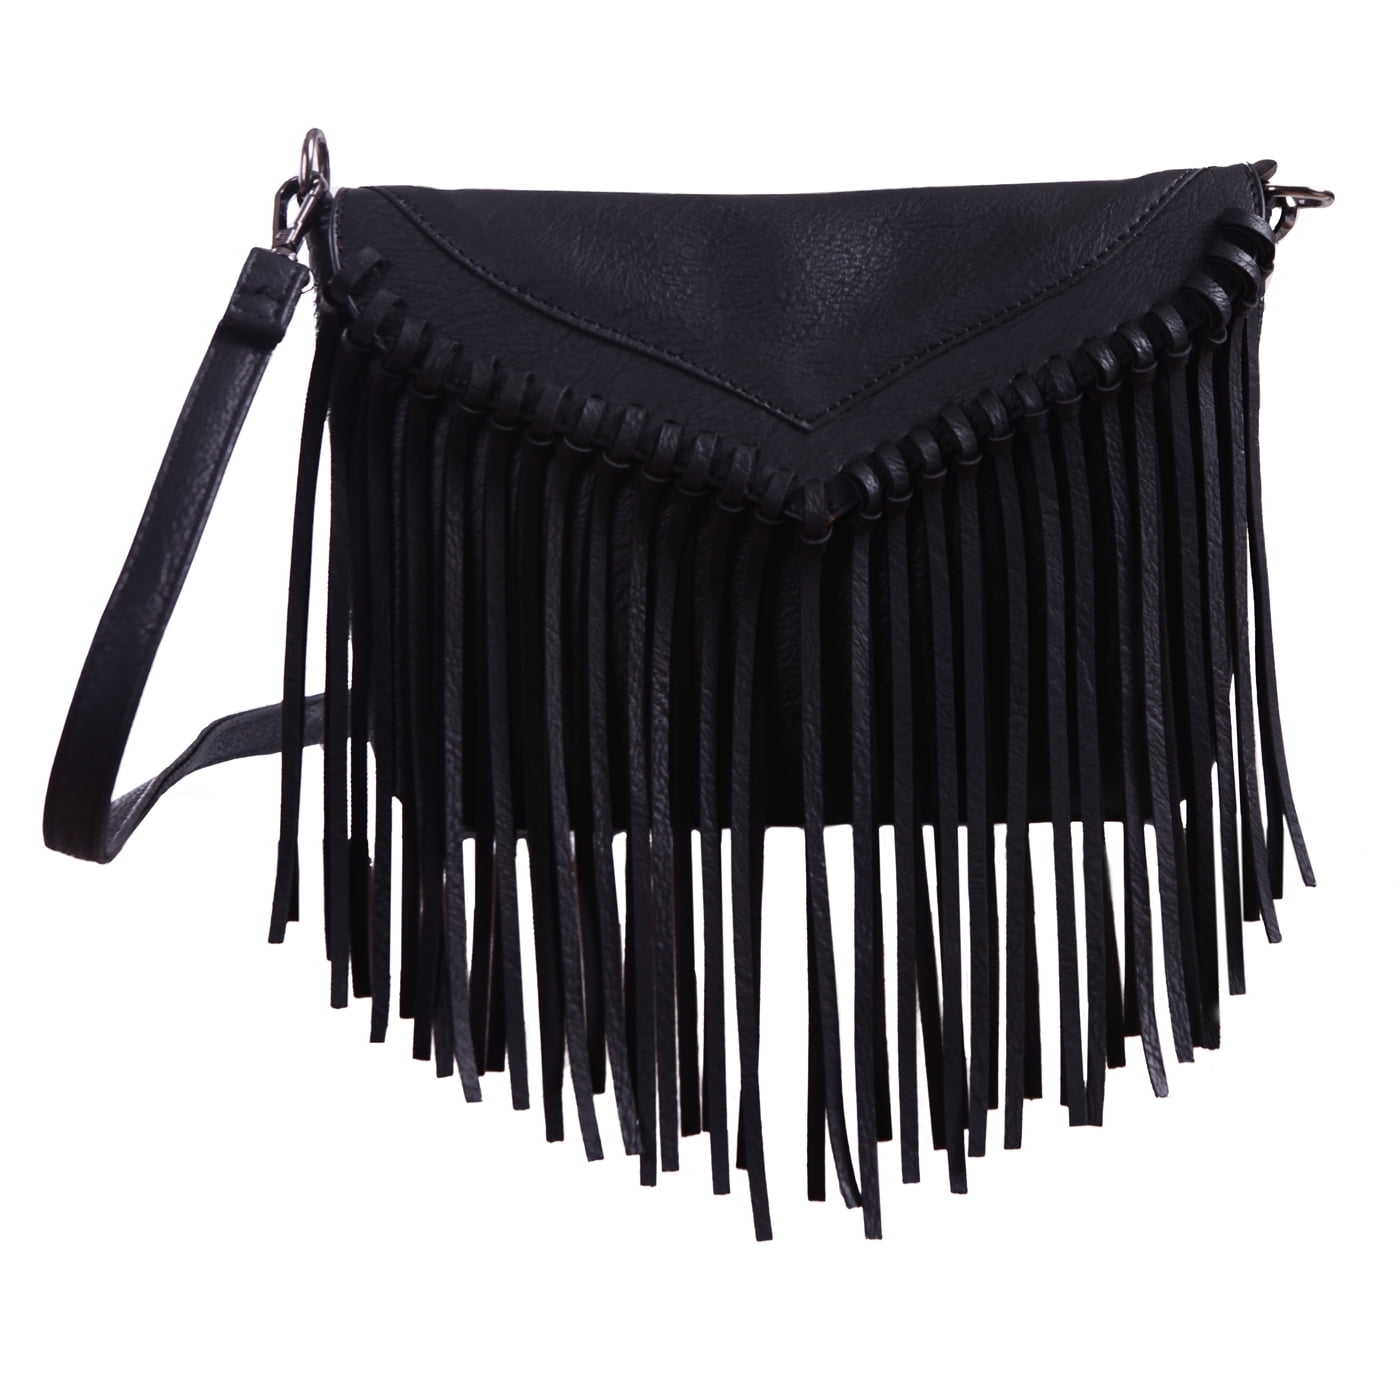 black Fringe purse, Western leather handbag with fringe. : Handmade  Products - Amazon.com